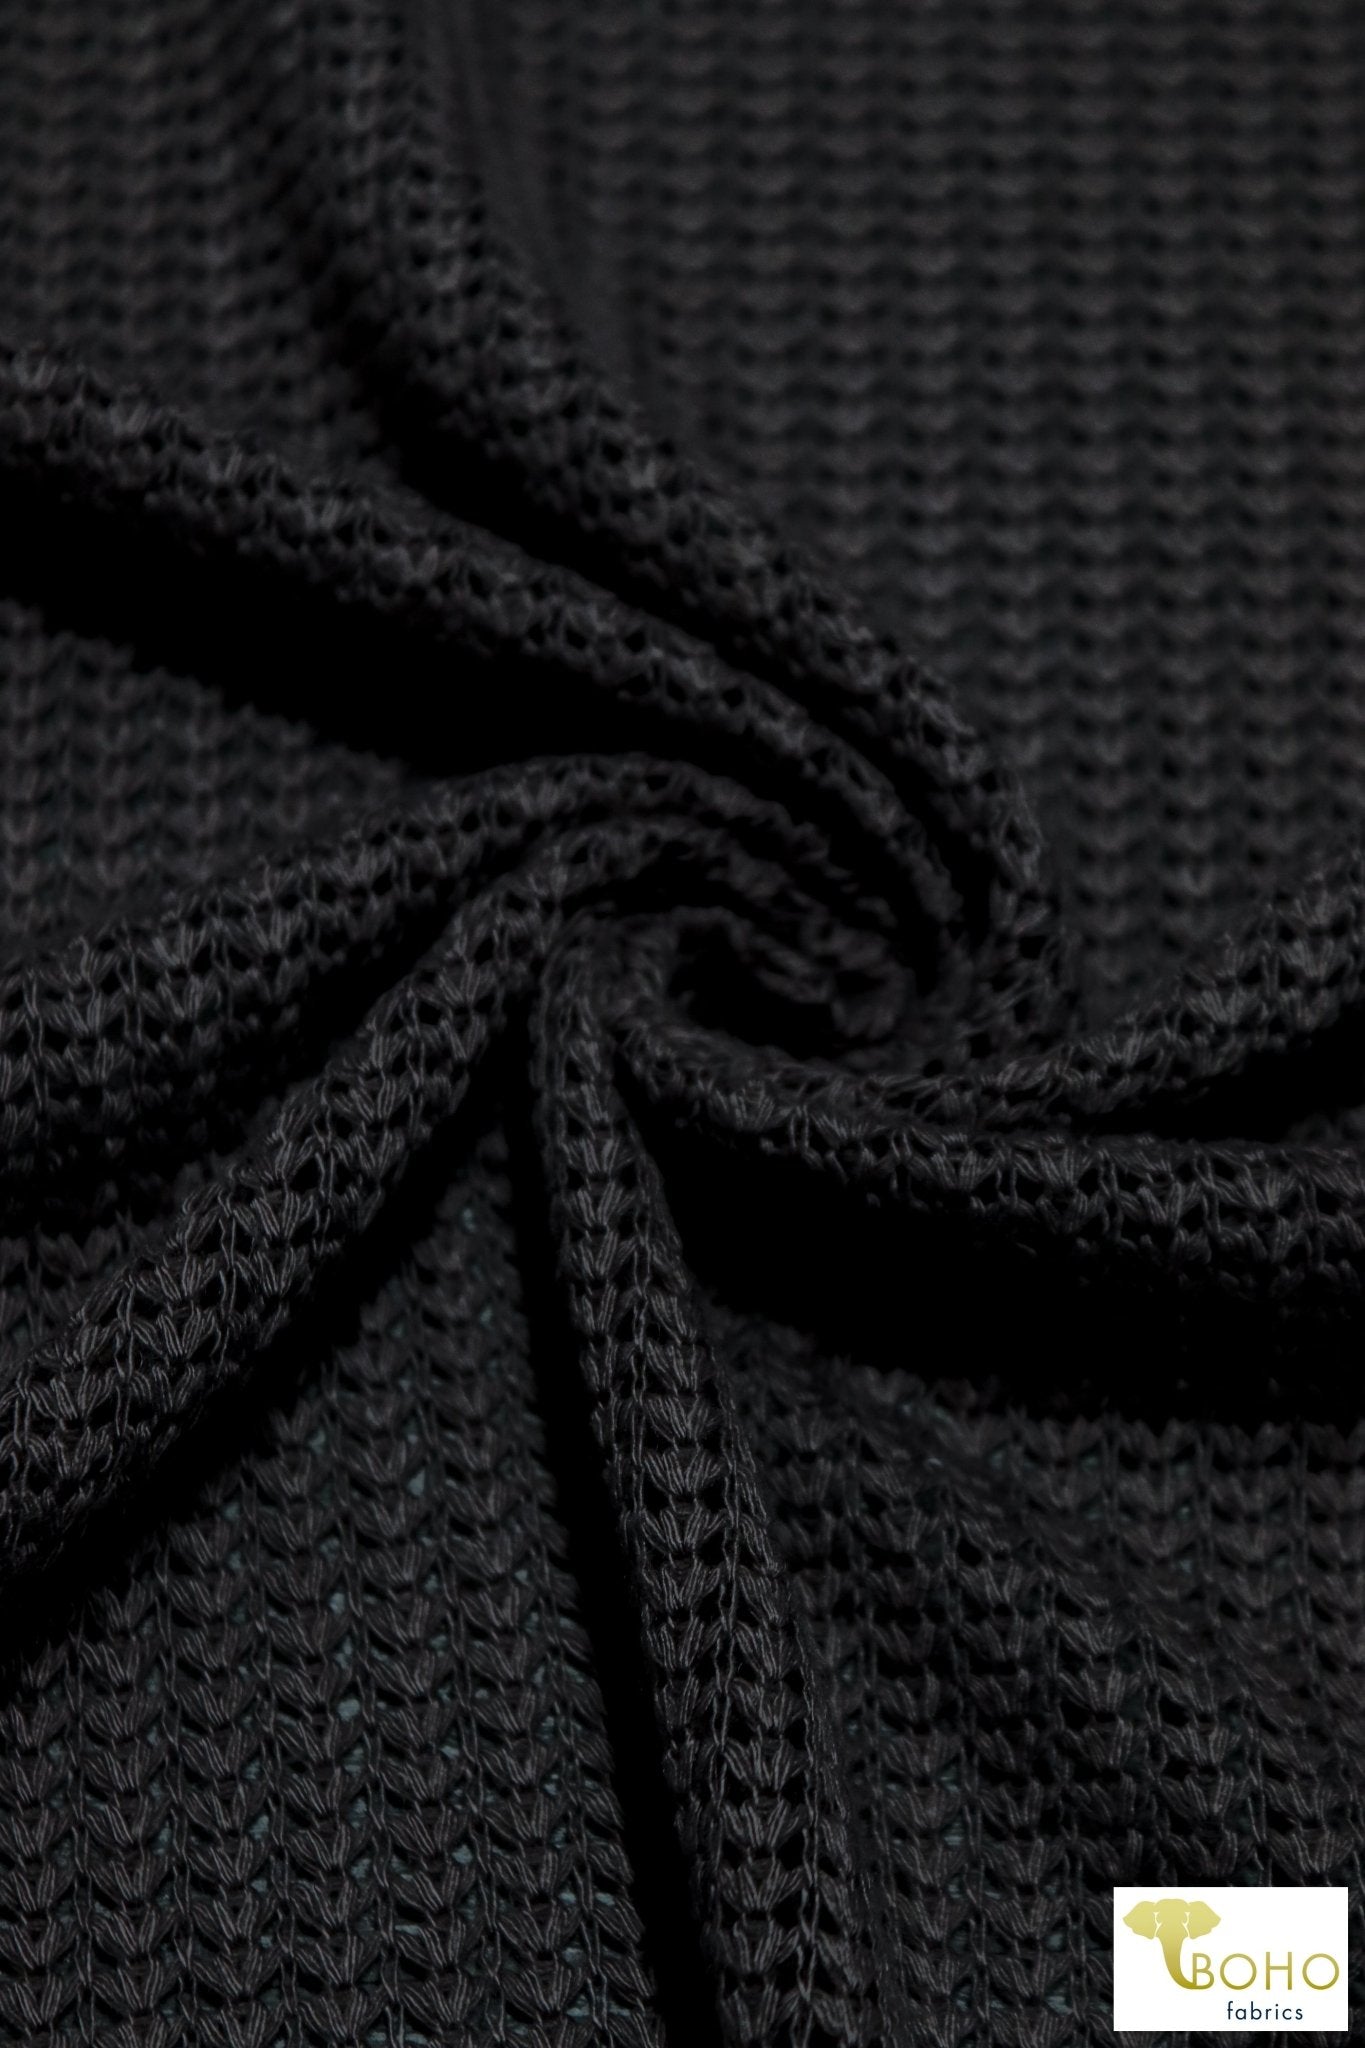 Brioche Stitches in Black, Sweater Knit. SWTR-215-BLK - Boho Fabrics